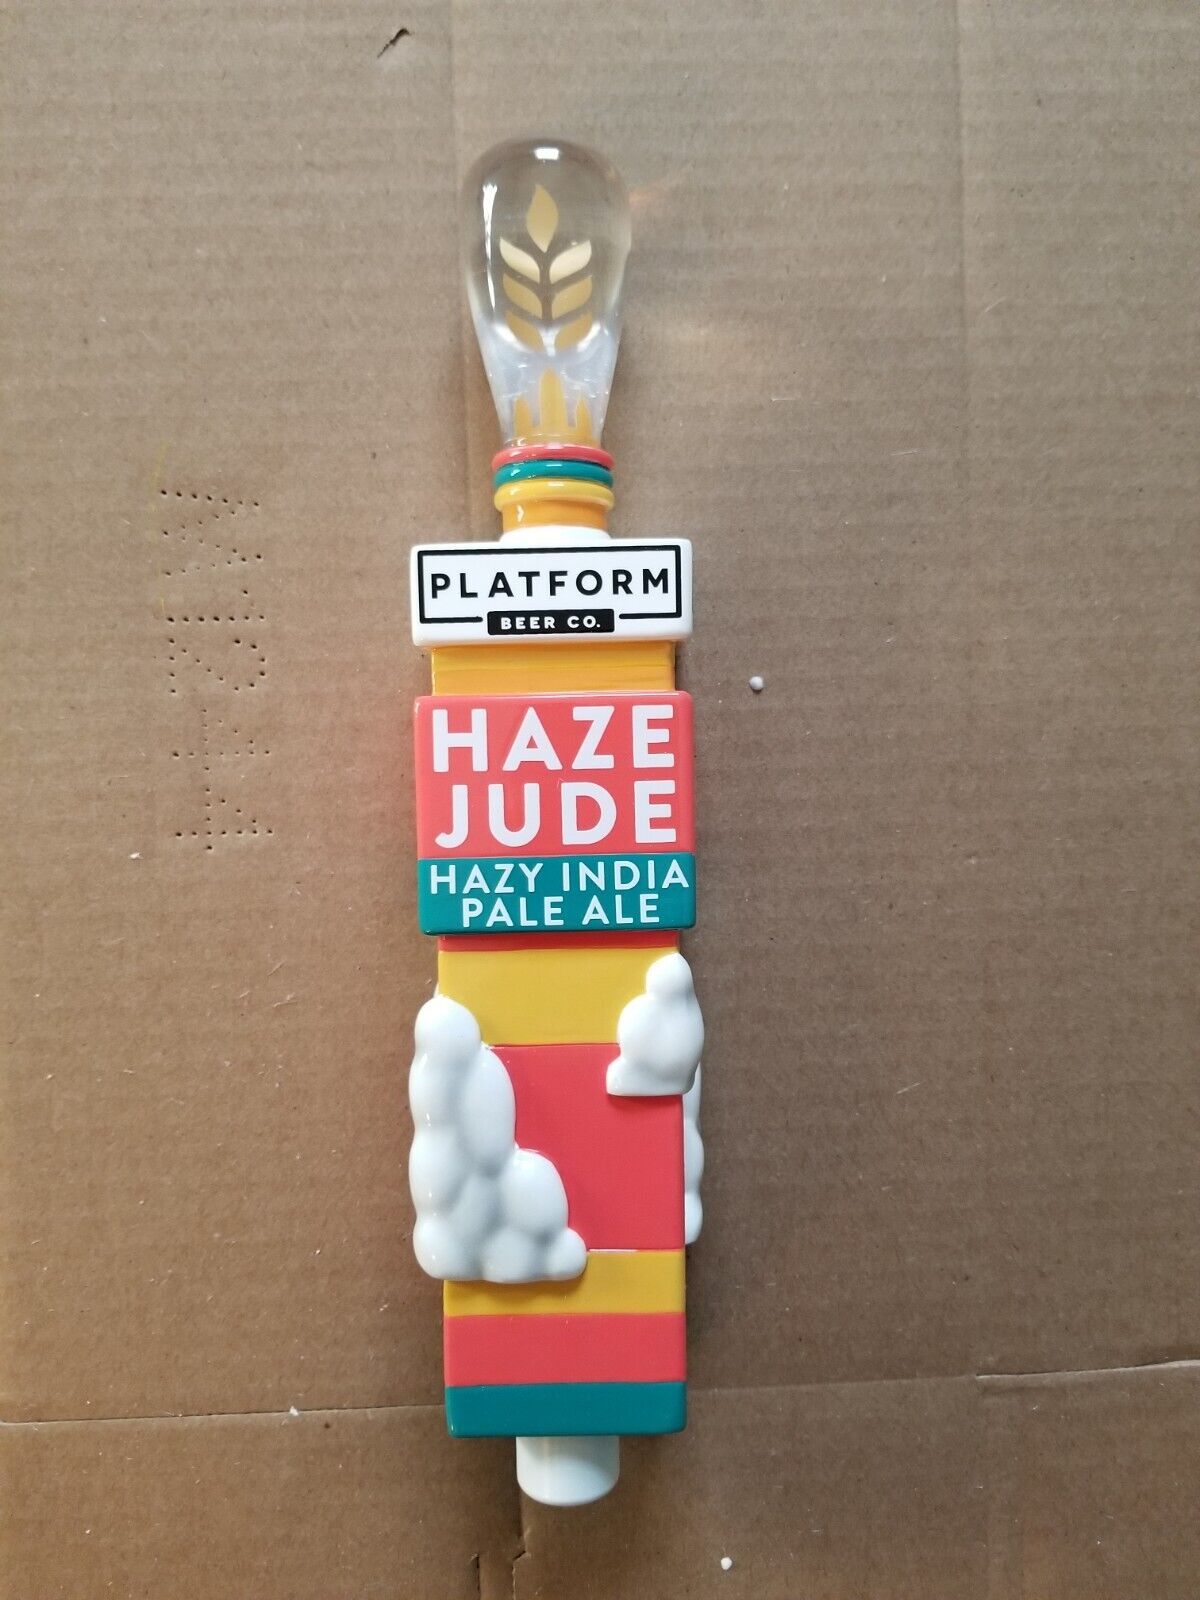 Platform Beer Company Haze Jude Hazy IPA beer tap handle